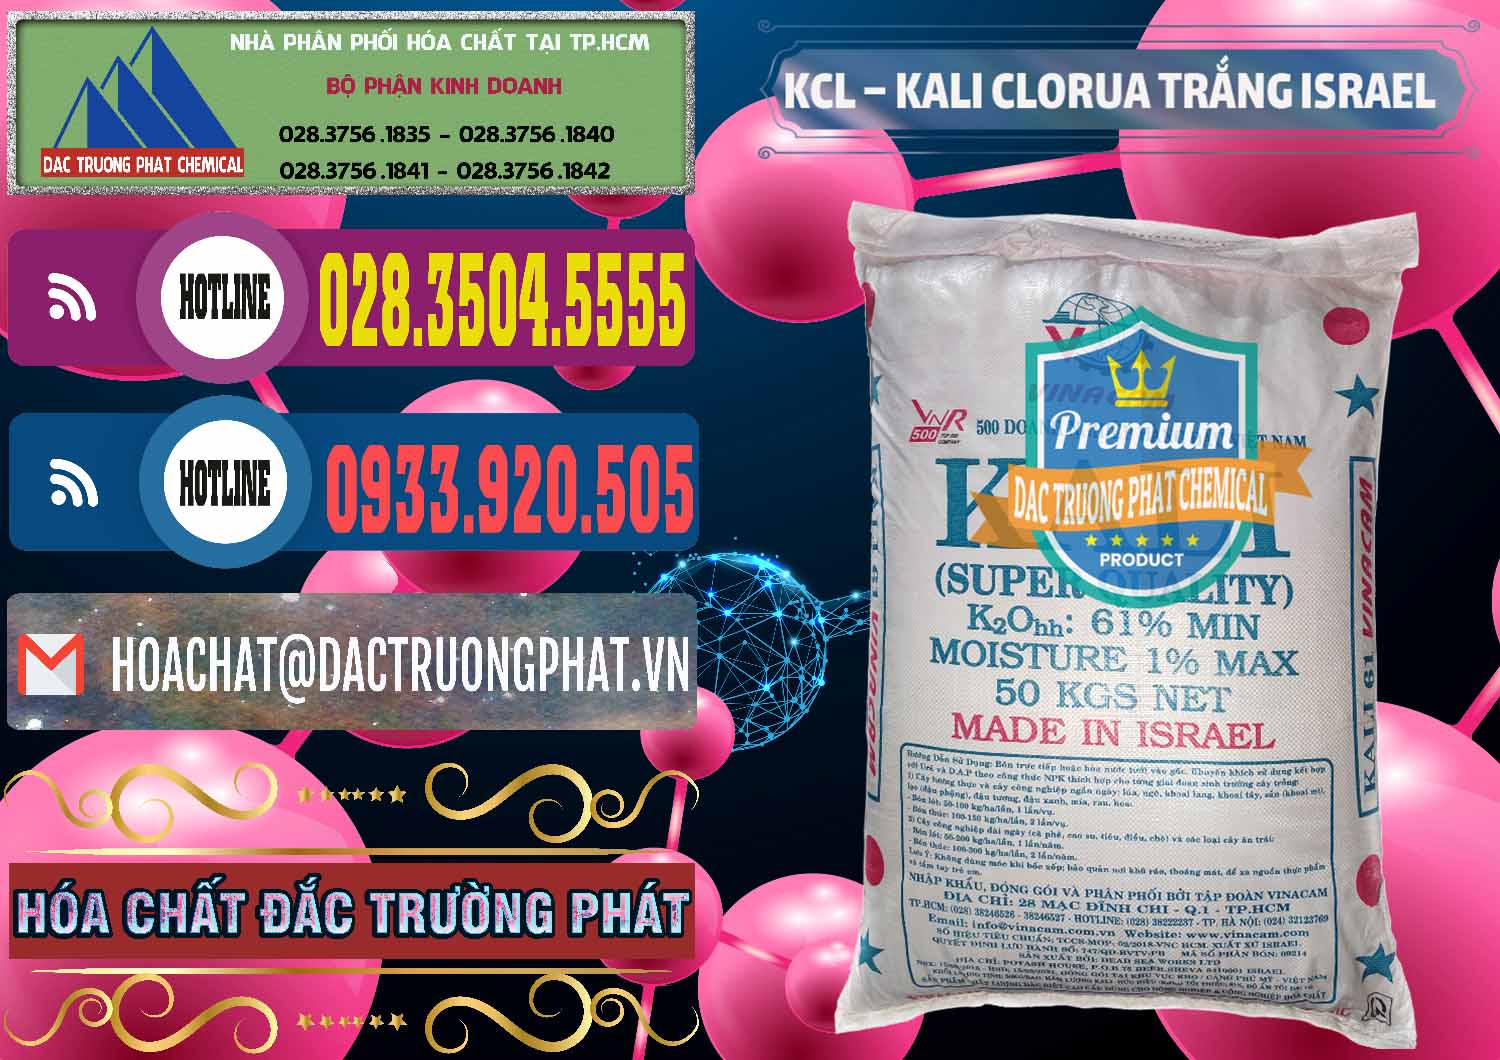 Đơn vị nhập khẩu - bán KCL – Kali Clorua Trắng Israel - 0087 - Cung cấp & bán hóa chất tại TP.HCM - muabanhoachat.com.vn